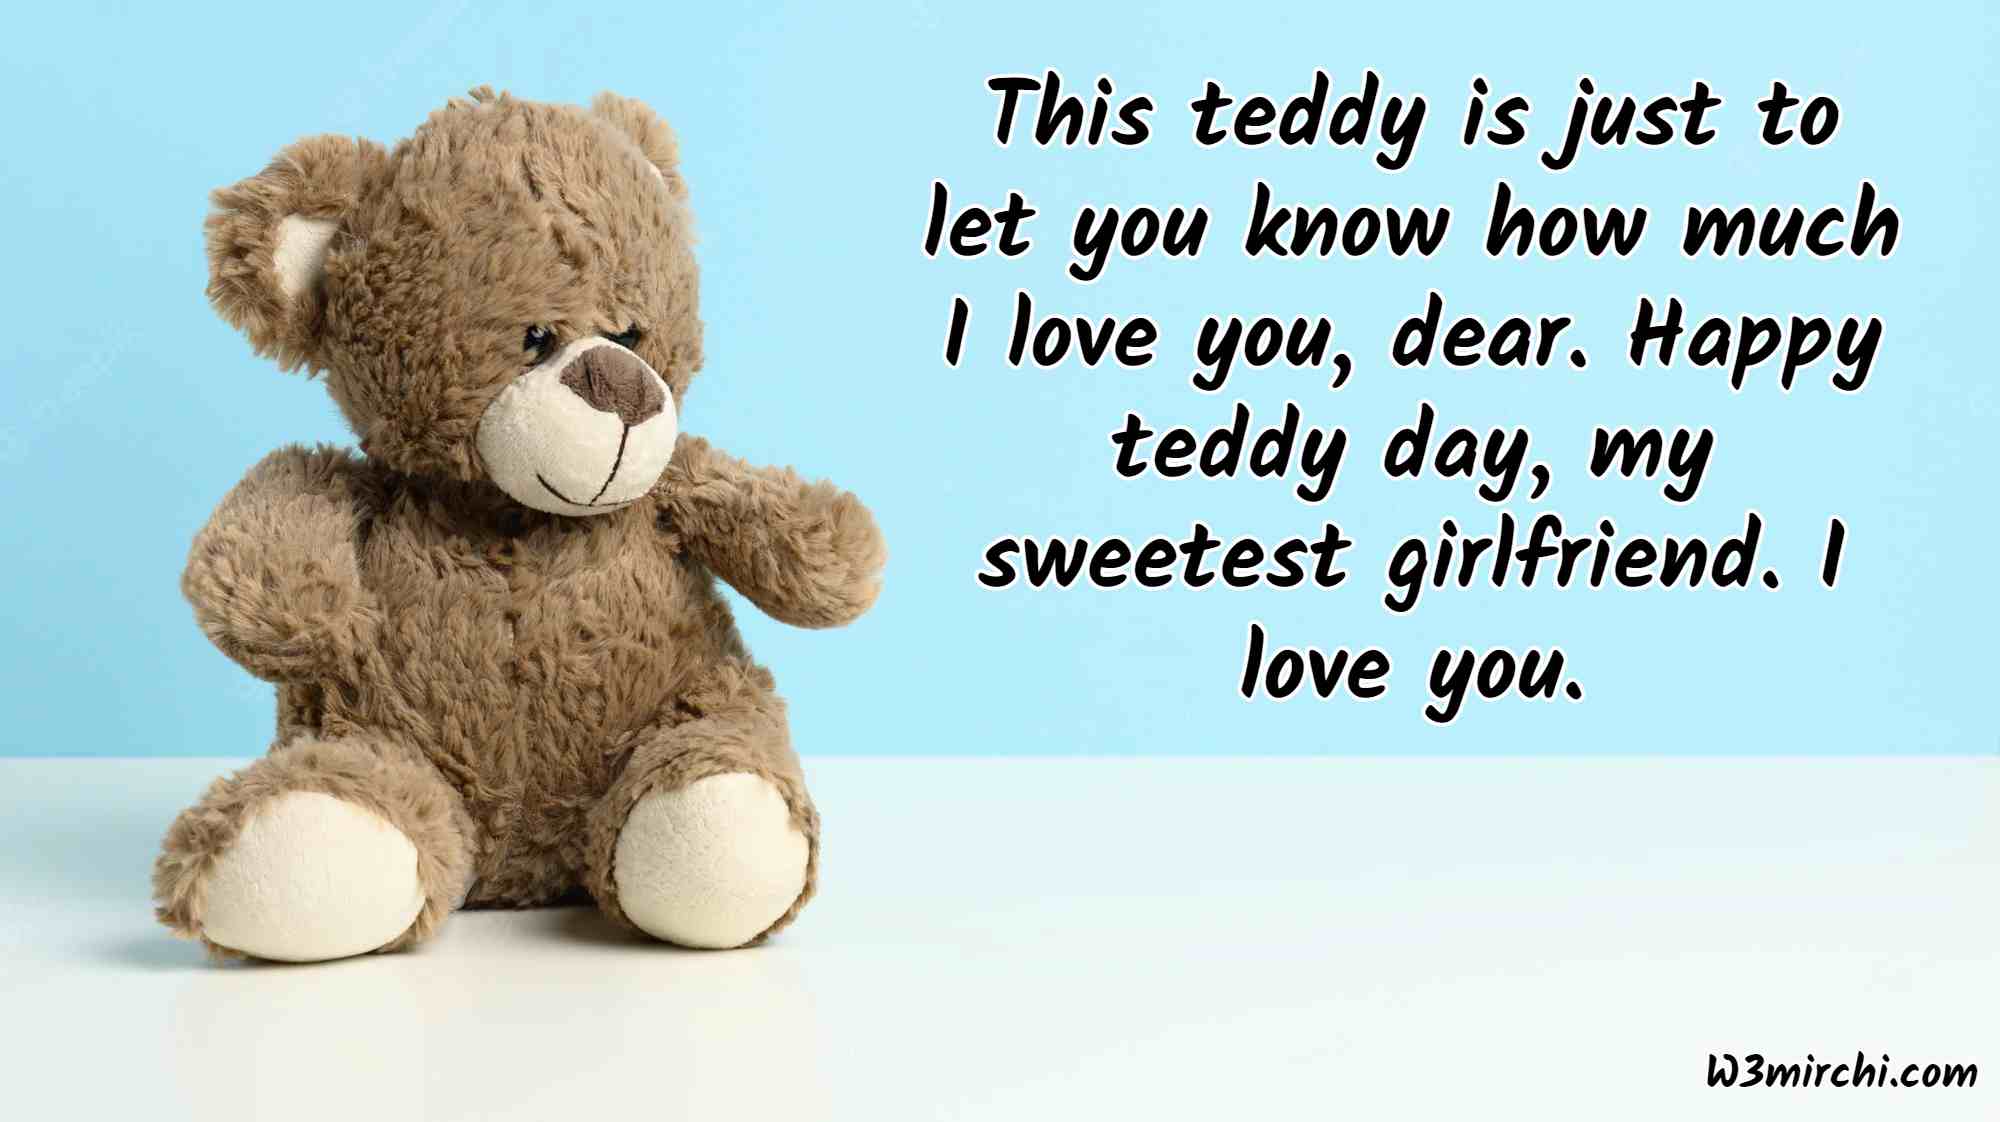 Happy Teddy Day, my dear love!